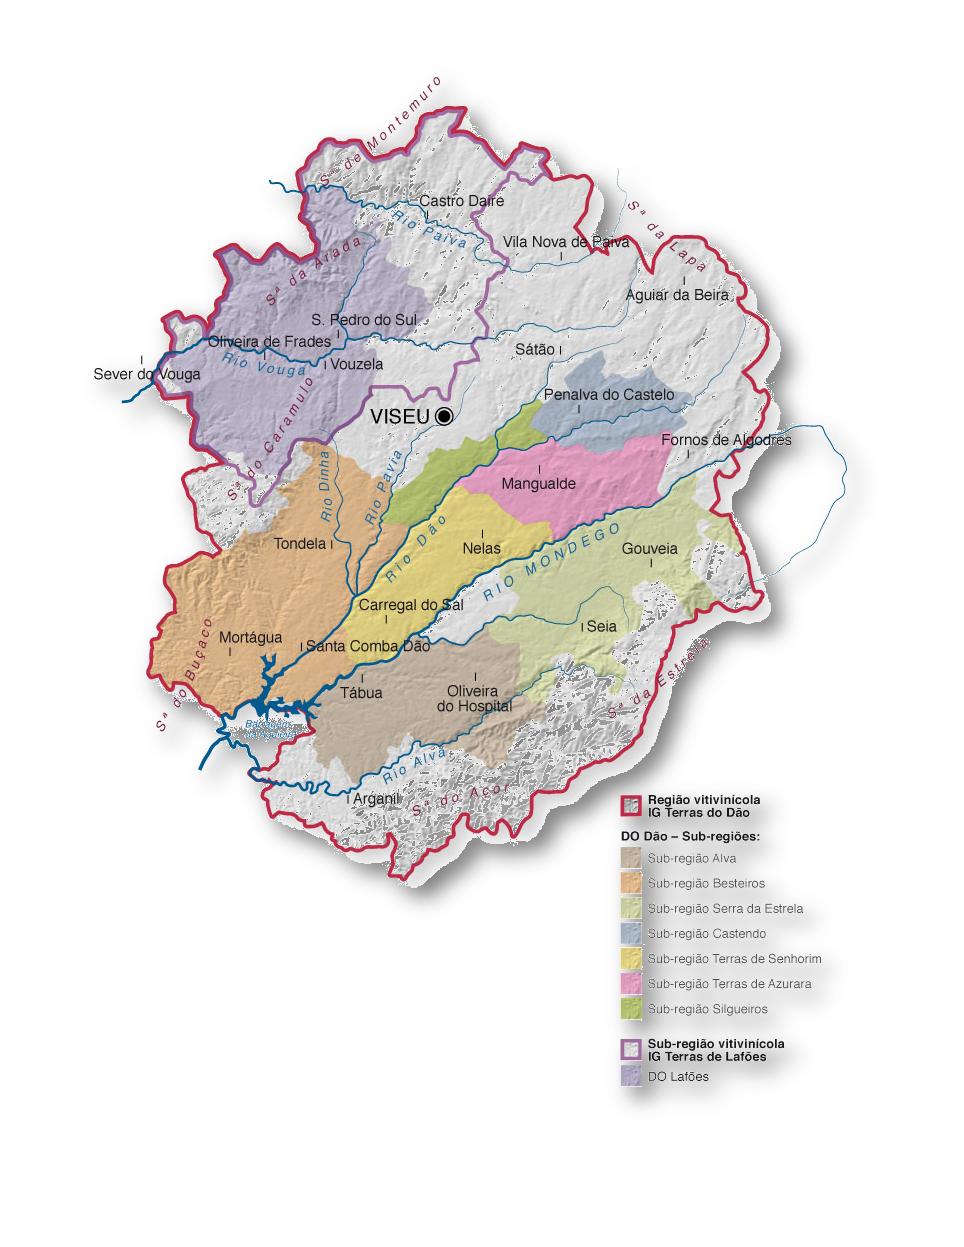 Mapa da região com as suas 8 sub-regiões